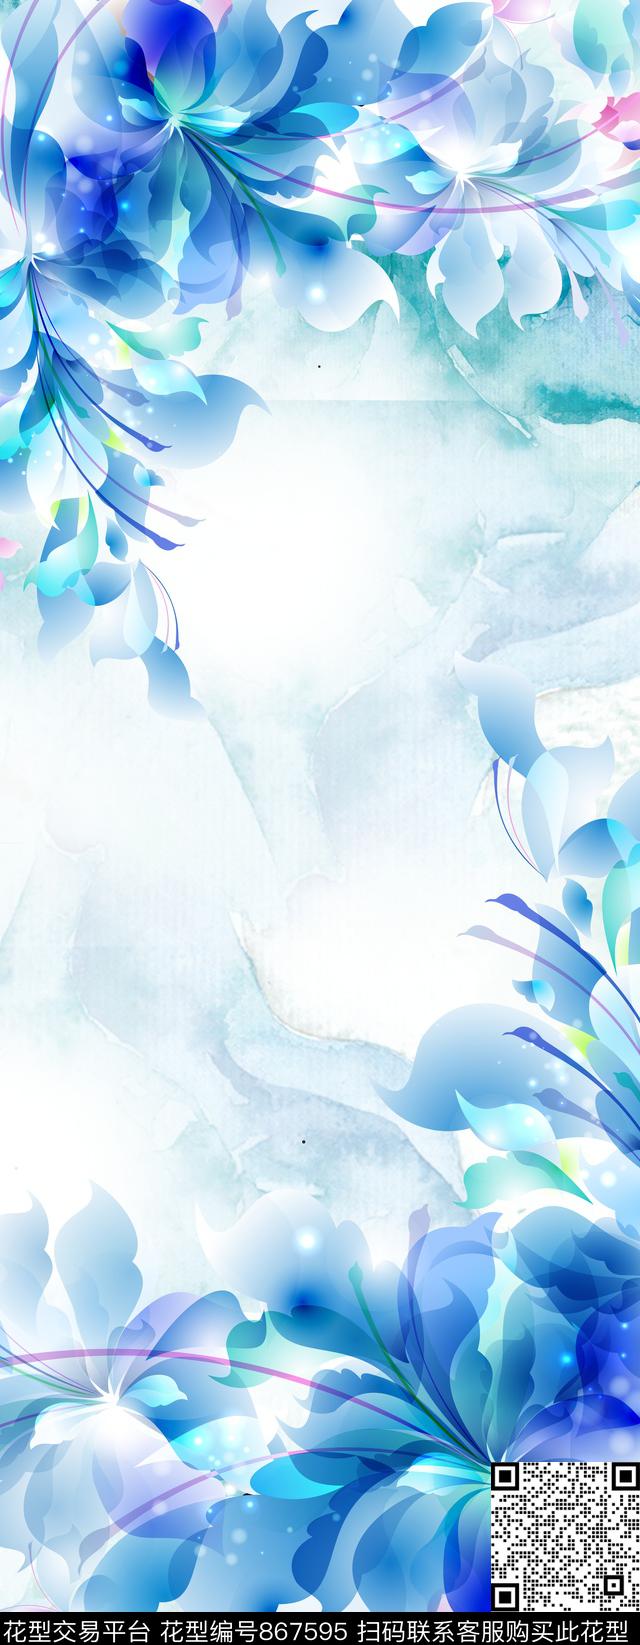 2.jpg - 867595 - 花朵 花卉 长巾 - 传统印花花型 － 长巾花型设计 － 瓦栏